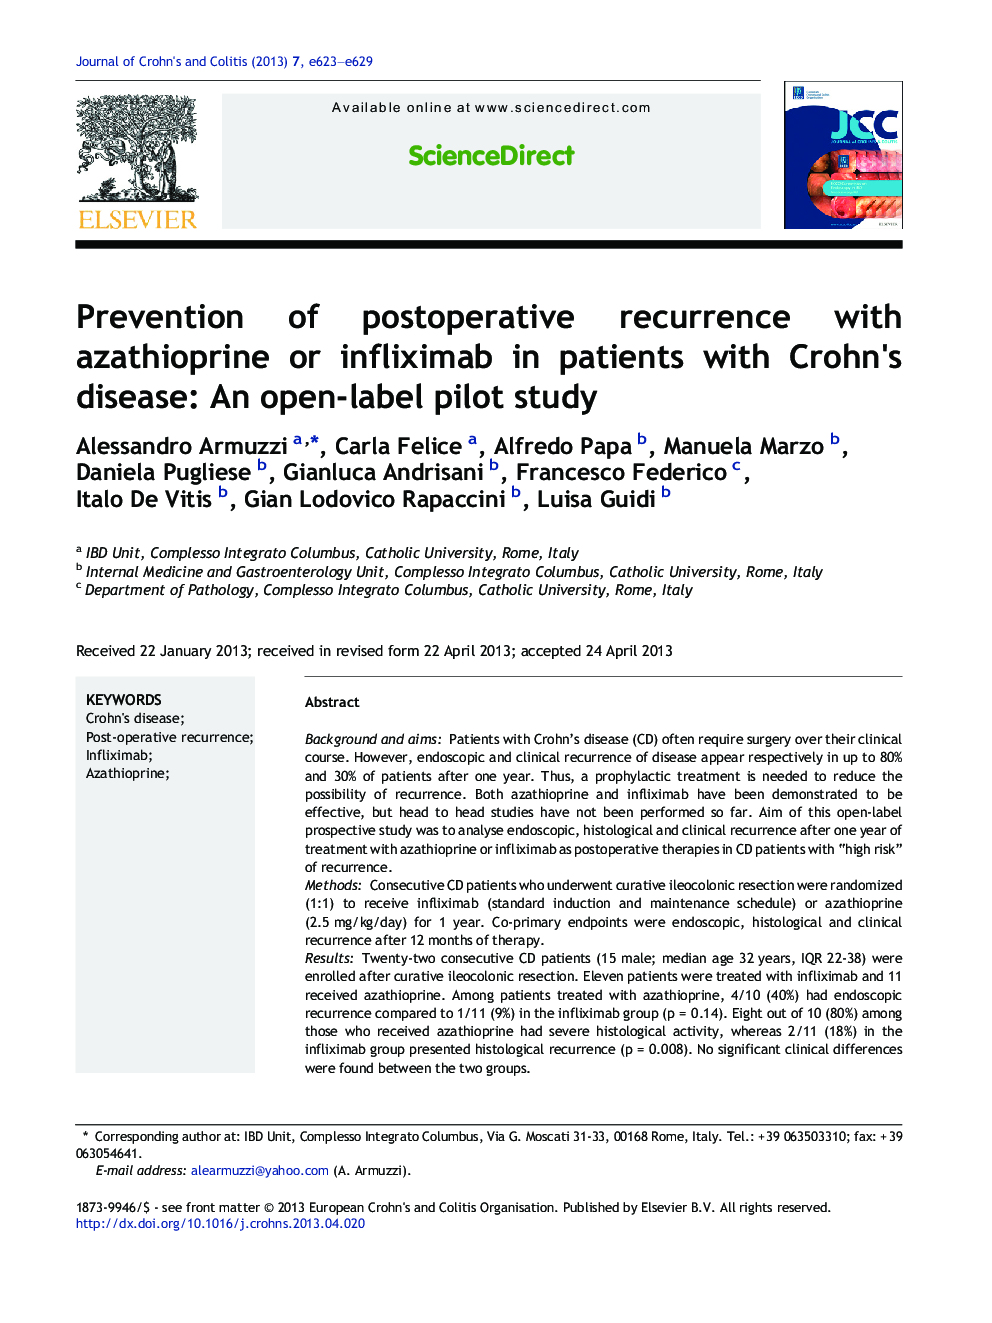 پیشگیری از عود مجدد پس از عمل با آزیتیوپرین یا انفلسیاماب در بیماران مبتلا به بیماری کرون: یک مطالعه آزمایشی باز 